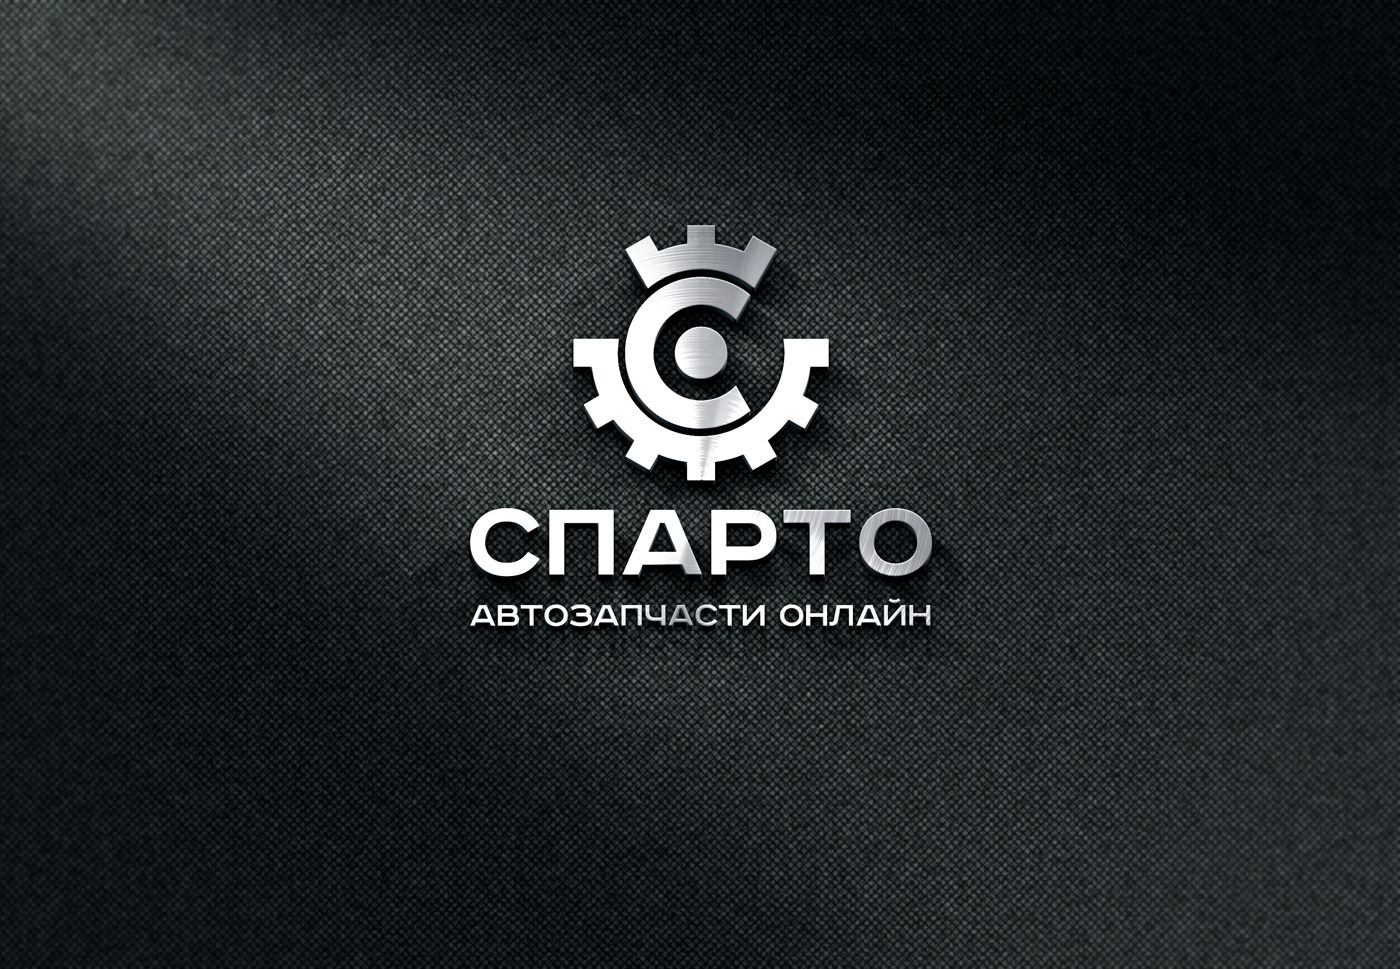 Логотип для Sparto (Спарто) - дизайнер mz777